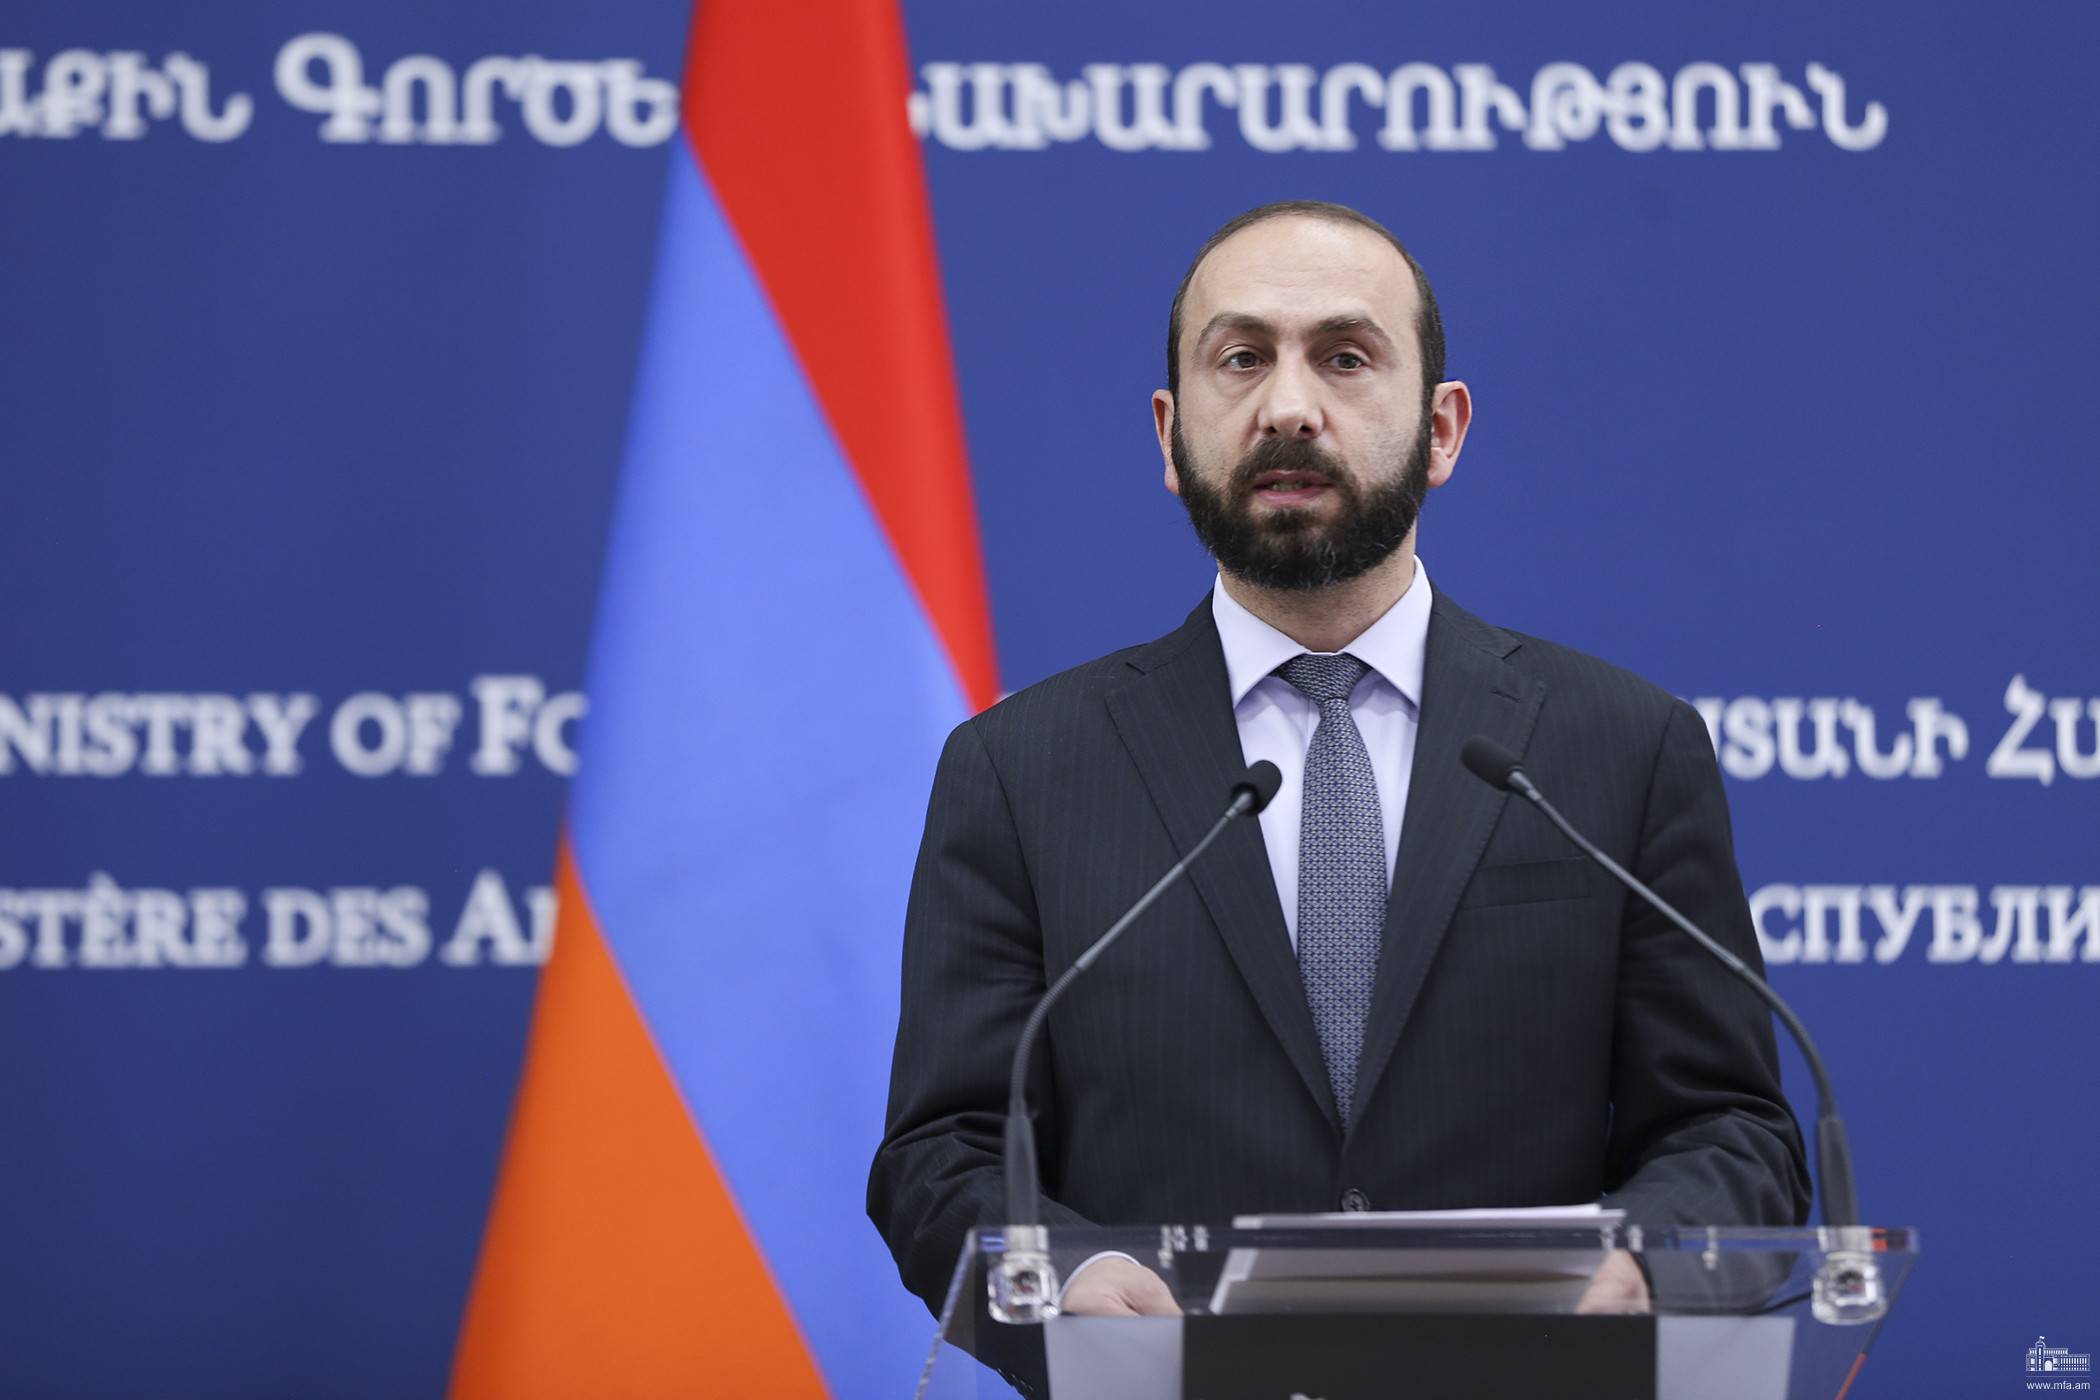 ՀՀ-ն ստացել է խաղաղության պայմանագրի հայկական առաջարկների վերաբերյալ Բաքվի պատասխանը․ Միրզոյան